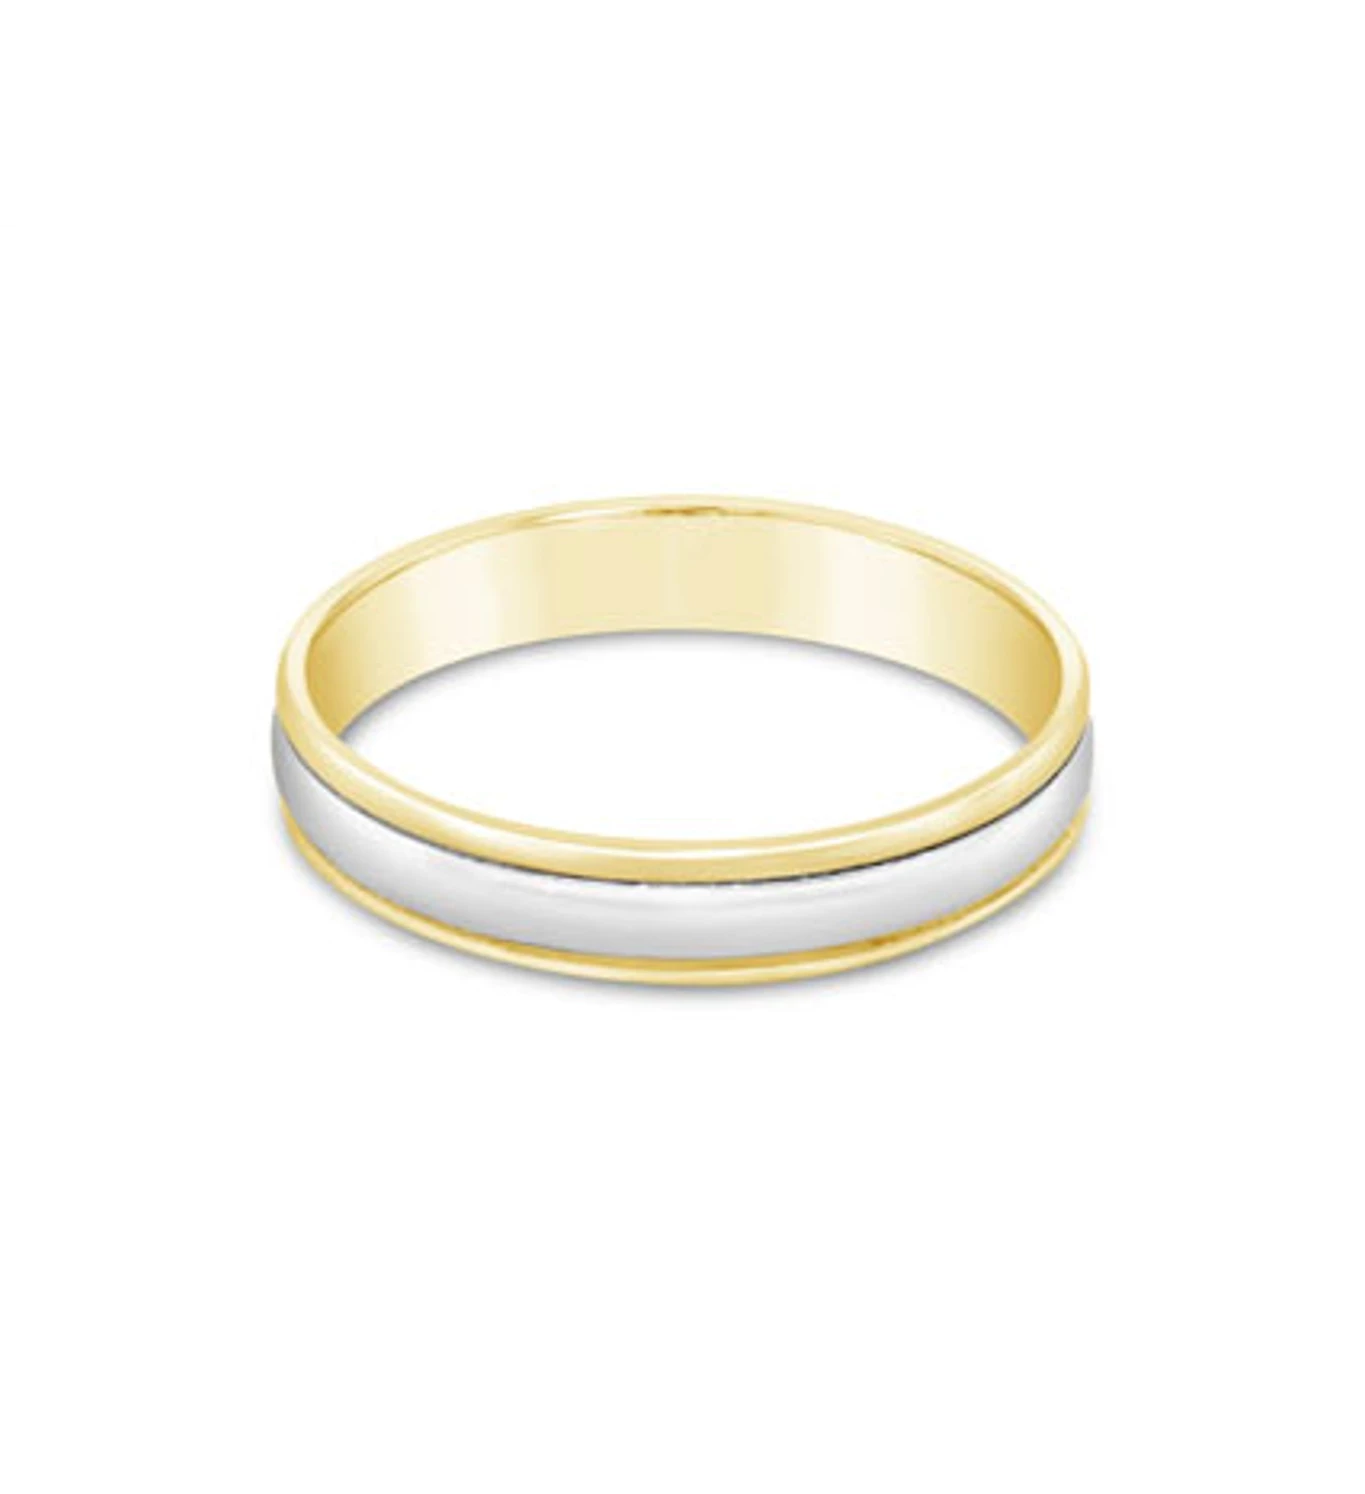 Everything zlatni vjenčani prsten